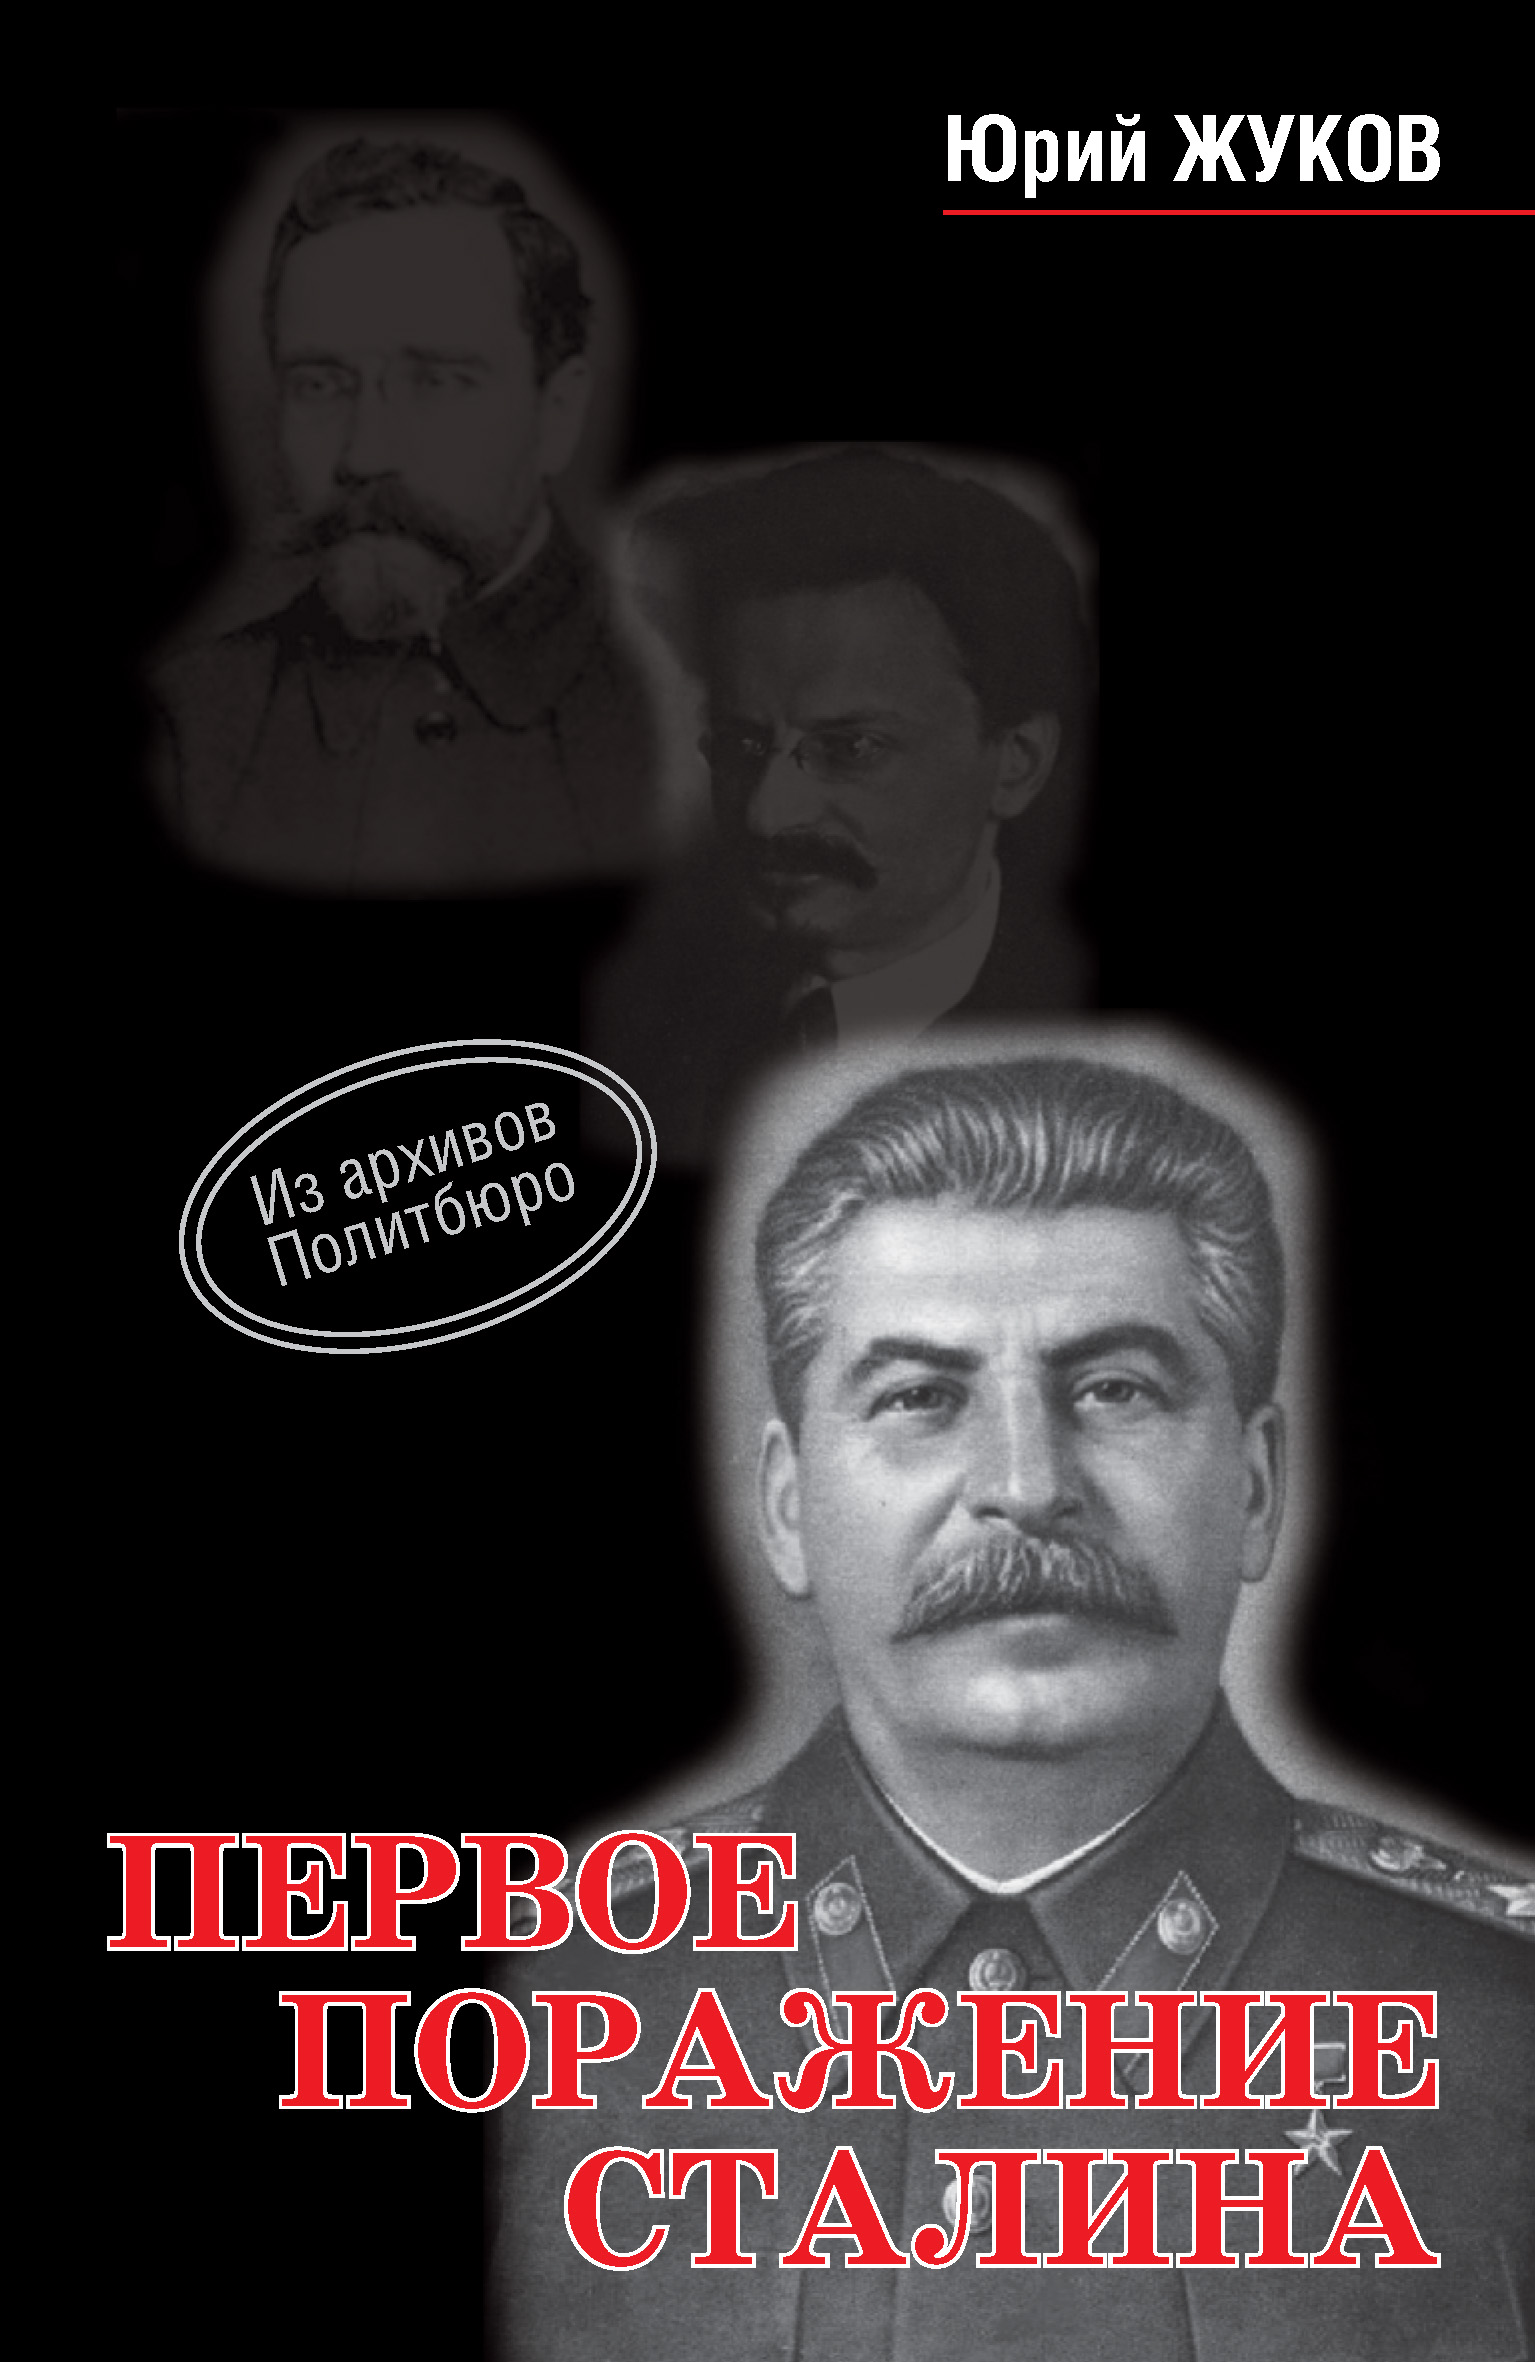 Книга Первое поражение Сталина из серии , созданная Юрий Жуков, может относится к жанру Биографии и Мемуары, История. Стоимость электронной книги Первое поражение Сталина с идентификатором 8277337 составляет 299.00 руб.